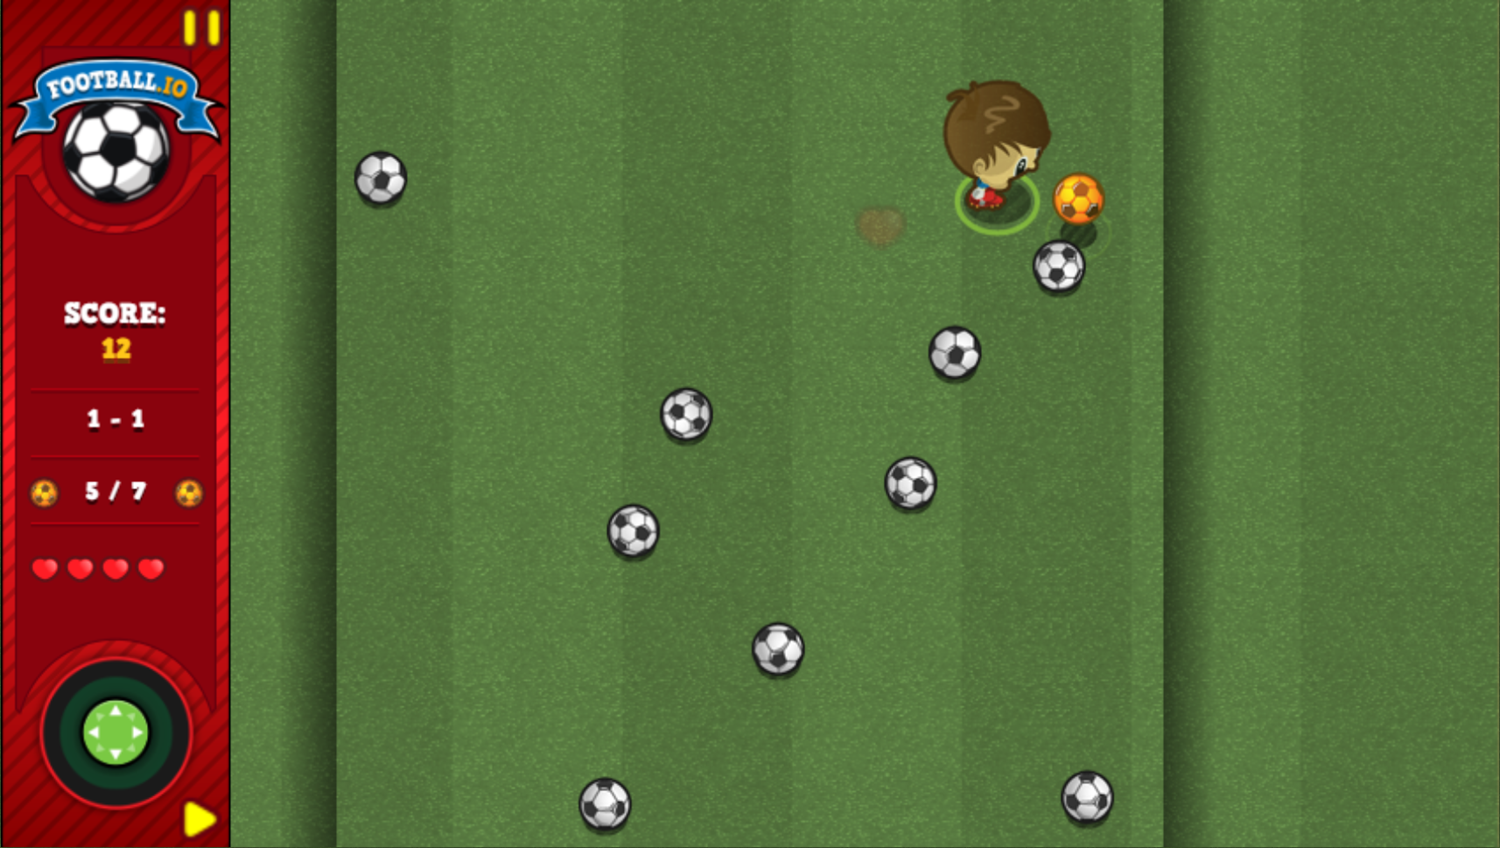 Football.io Game Play Screenshot.